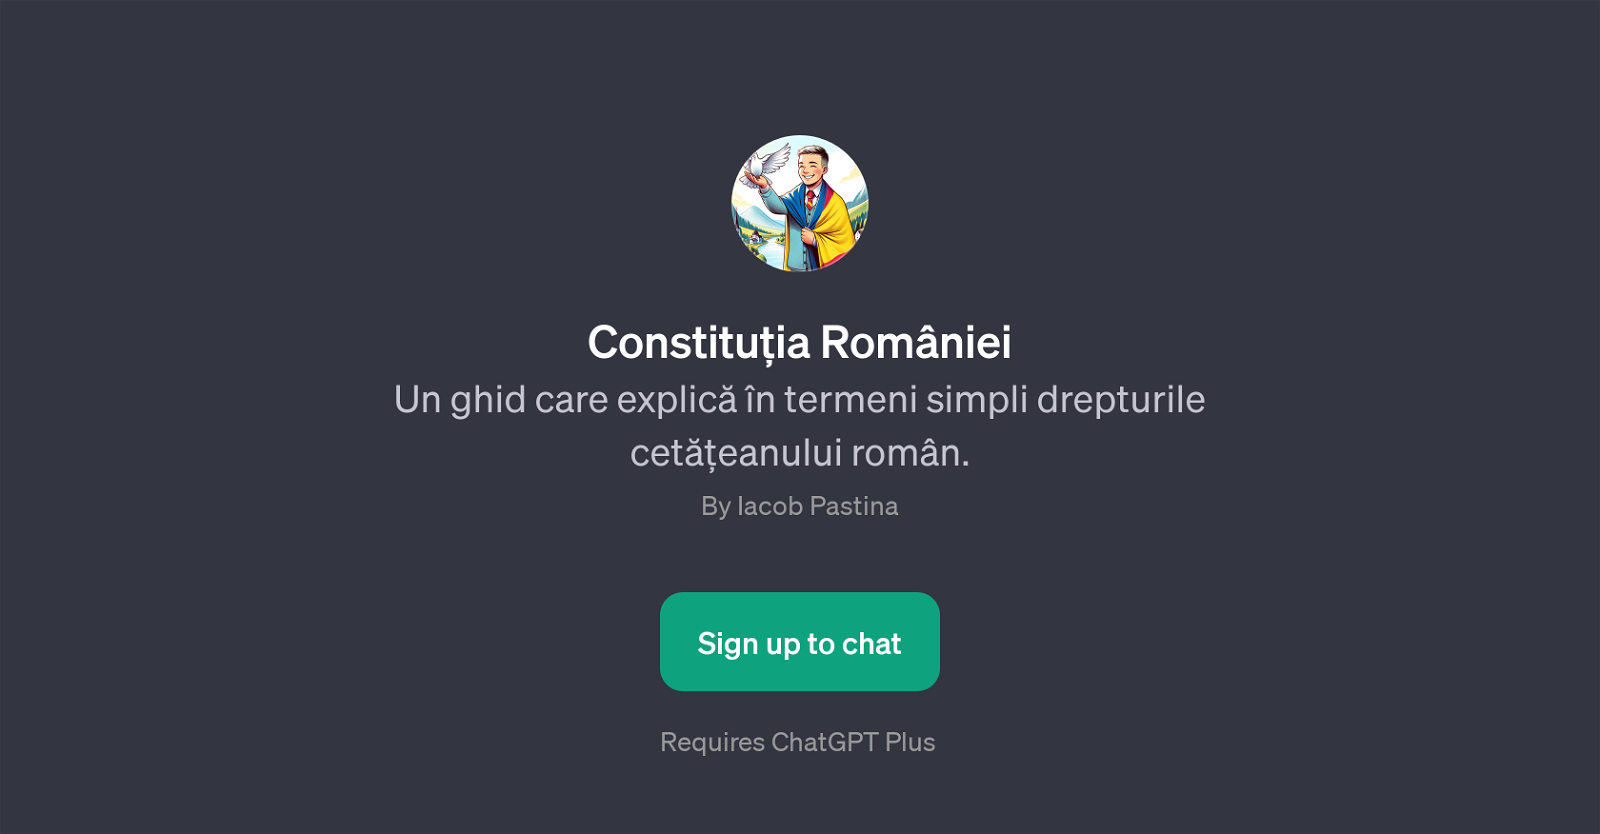 Constitutia Romaniei website